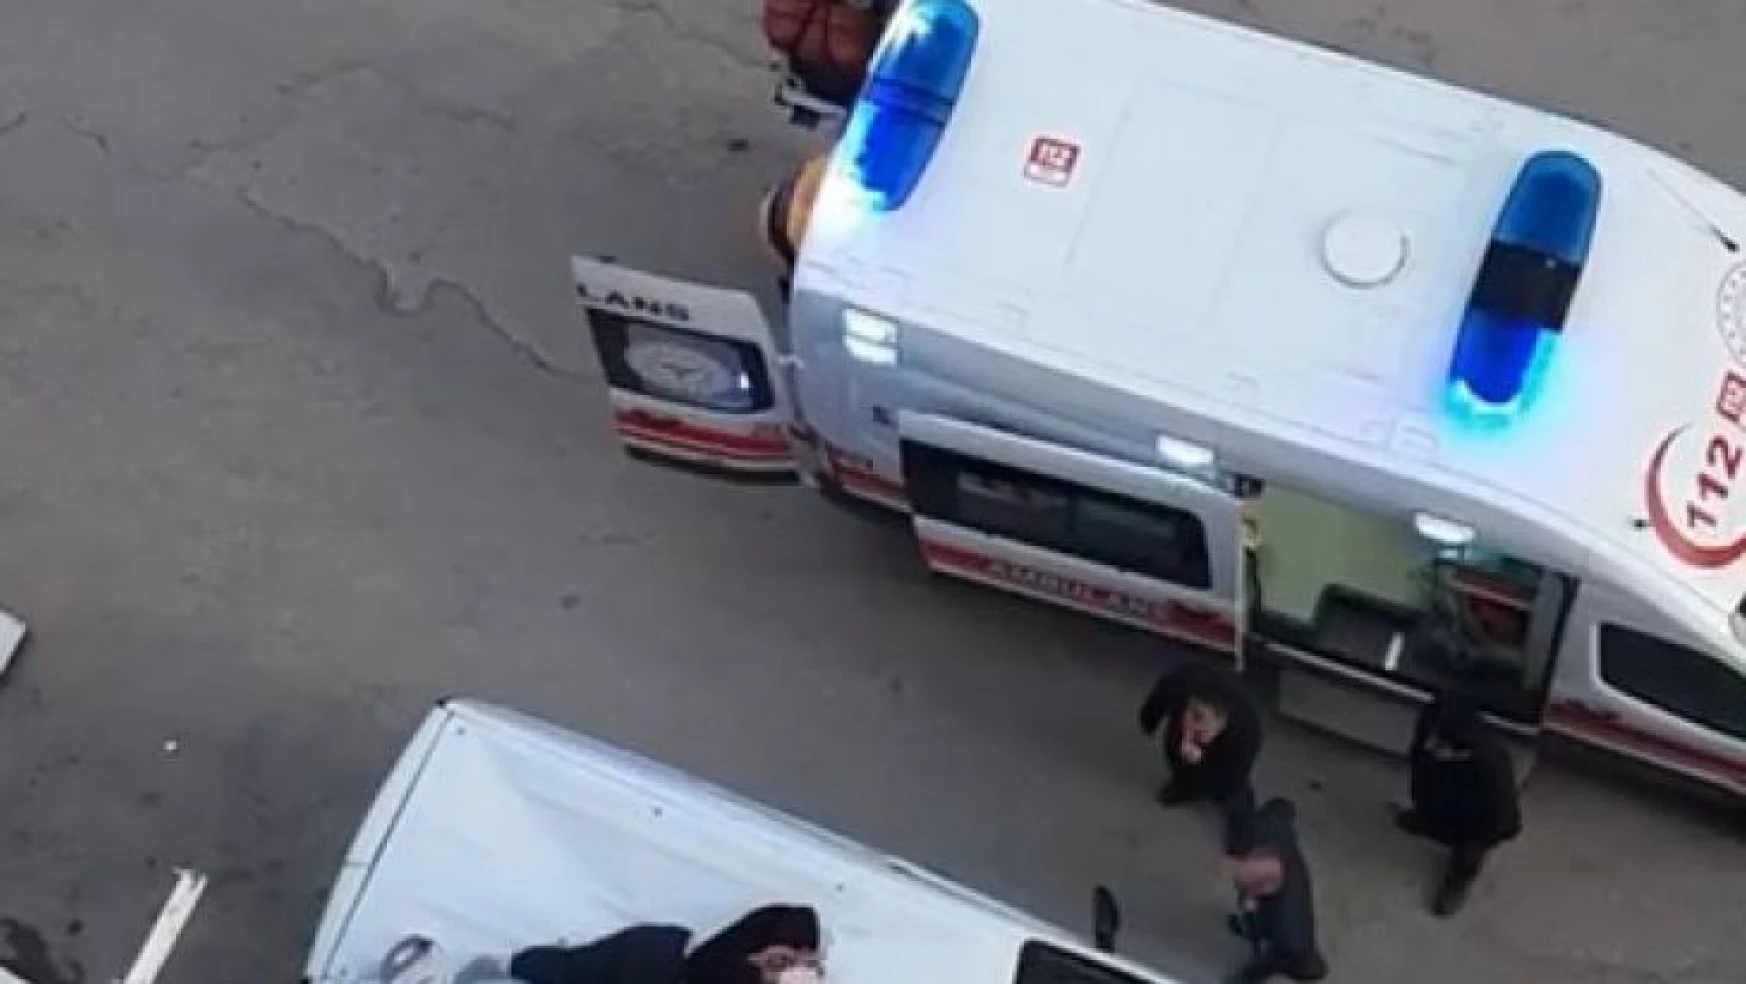 4'ncü kattan aracın üzerine düşen kadın ağır yaralandı